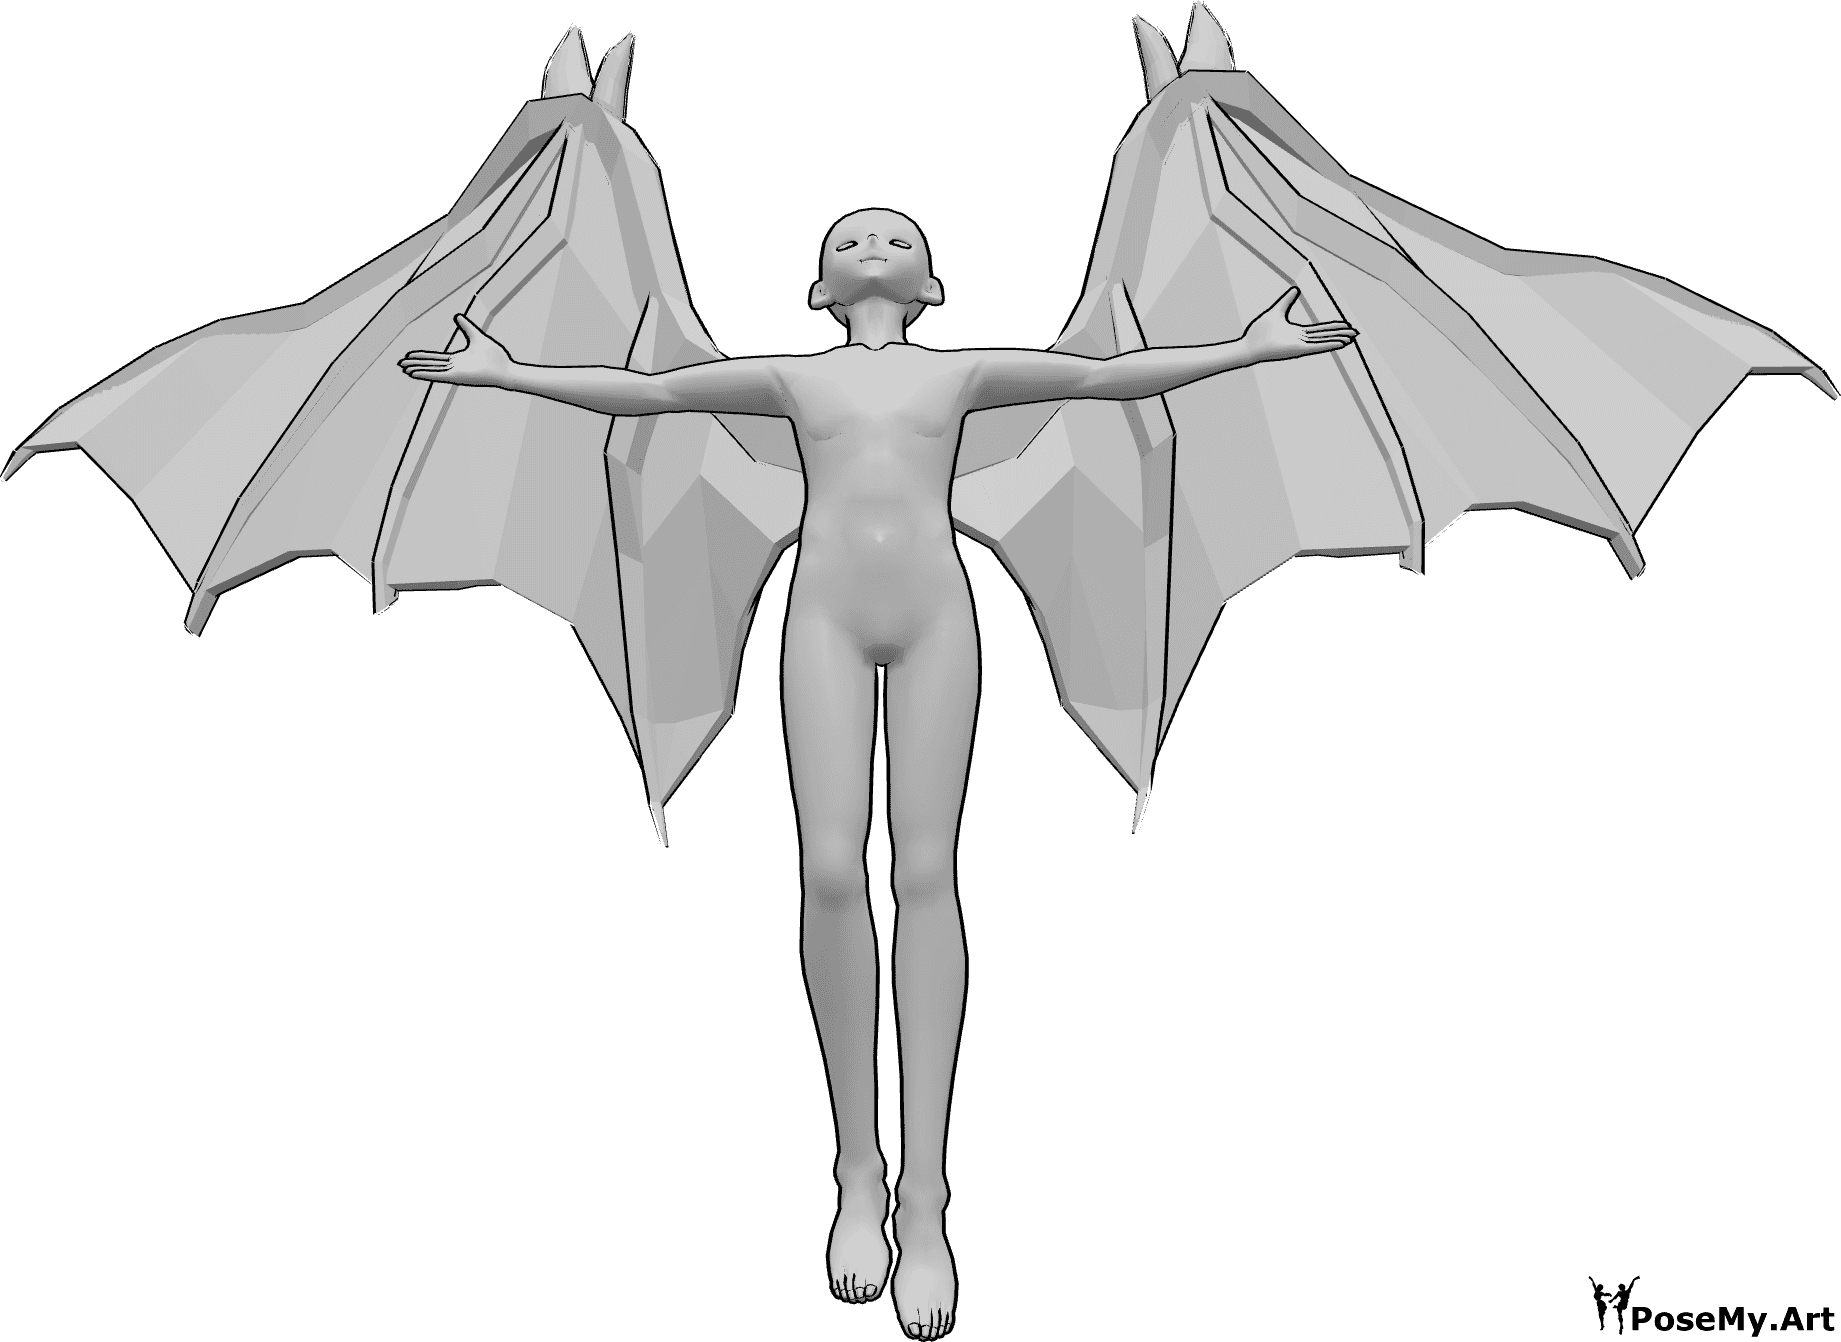 Referencia de poses- Anime diablo volando pose - Anime masculino con alas de diablo está volando, mirando hacia arriba y levantando las manos